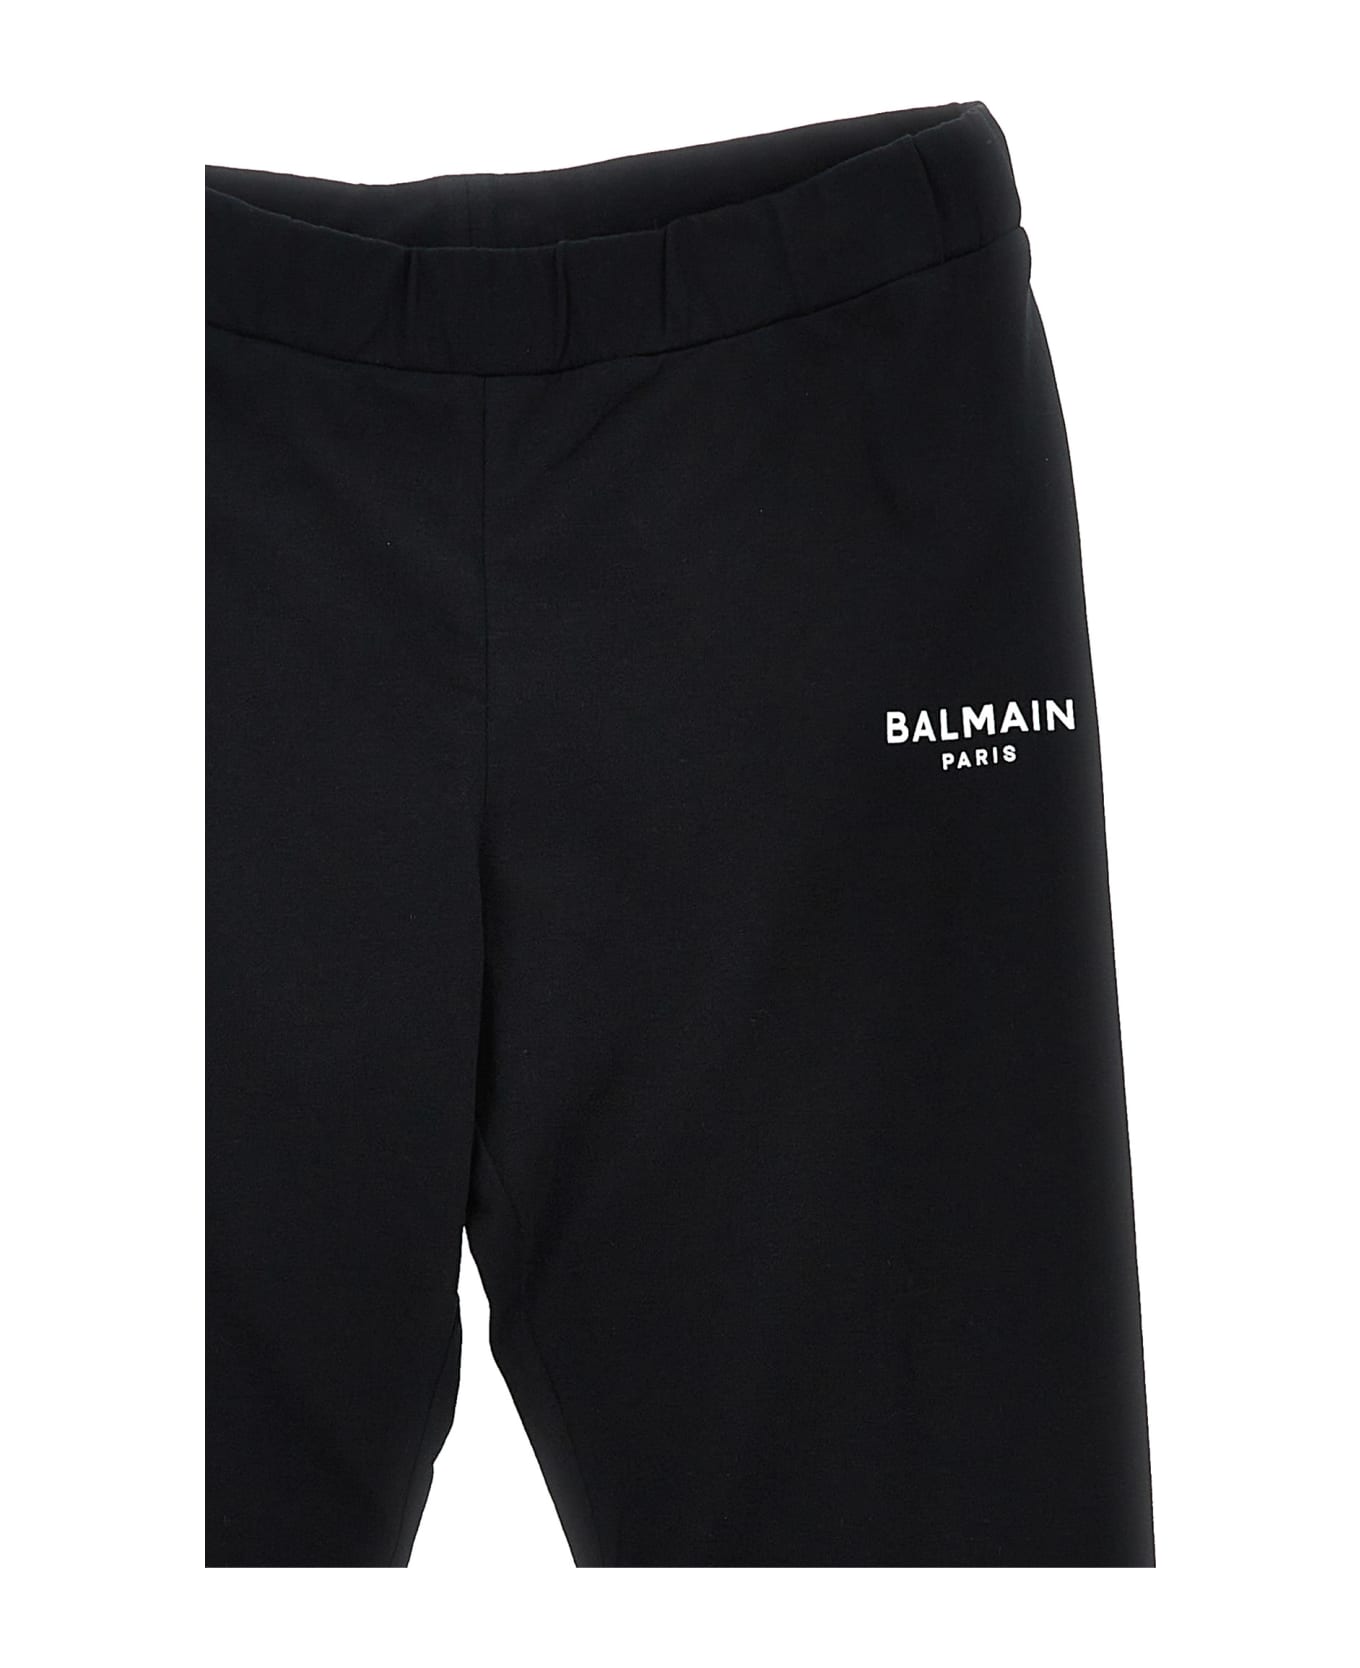 Balmain Logo Print Leggings - BLACK ボトムス